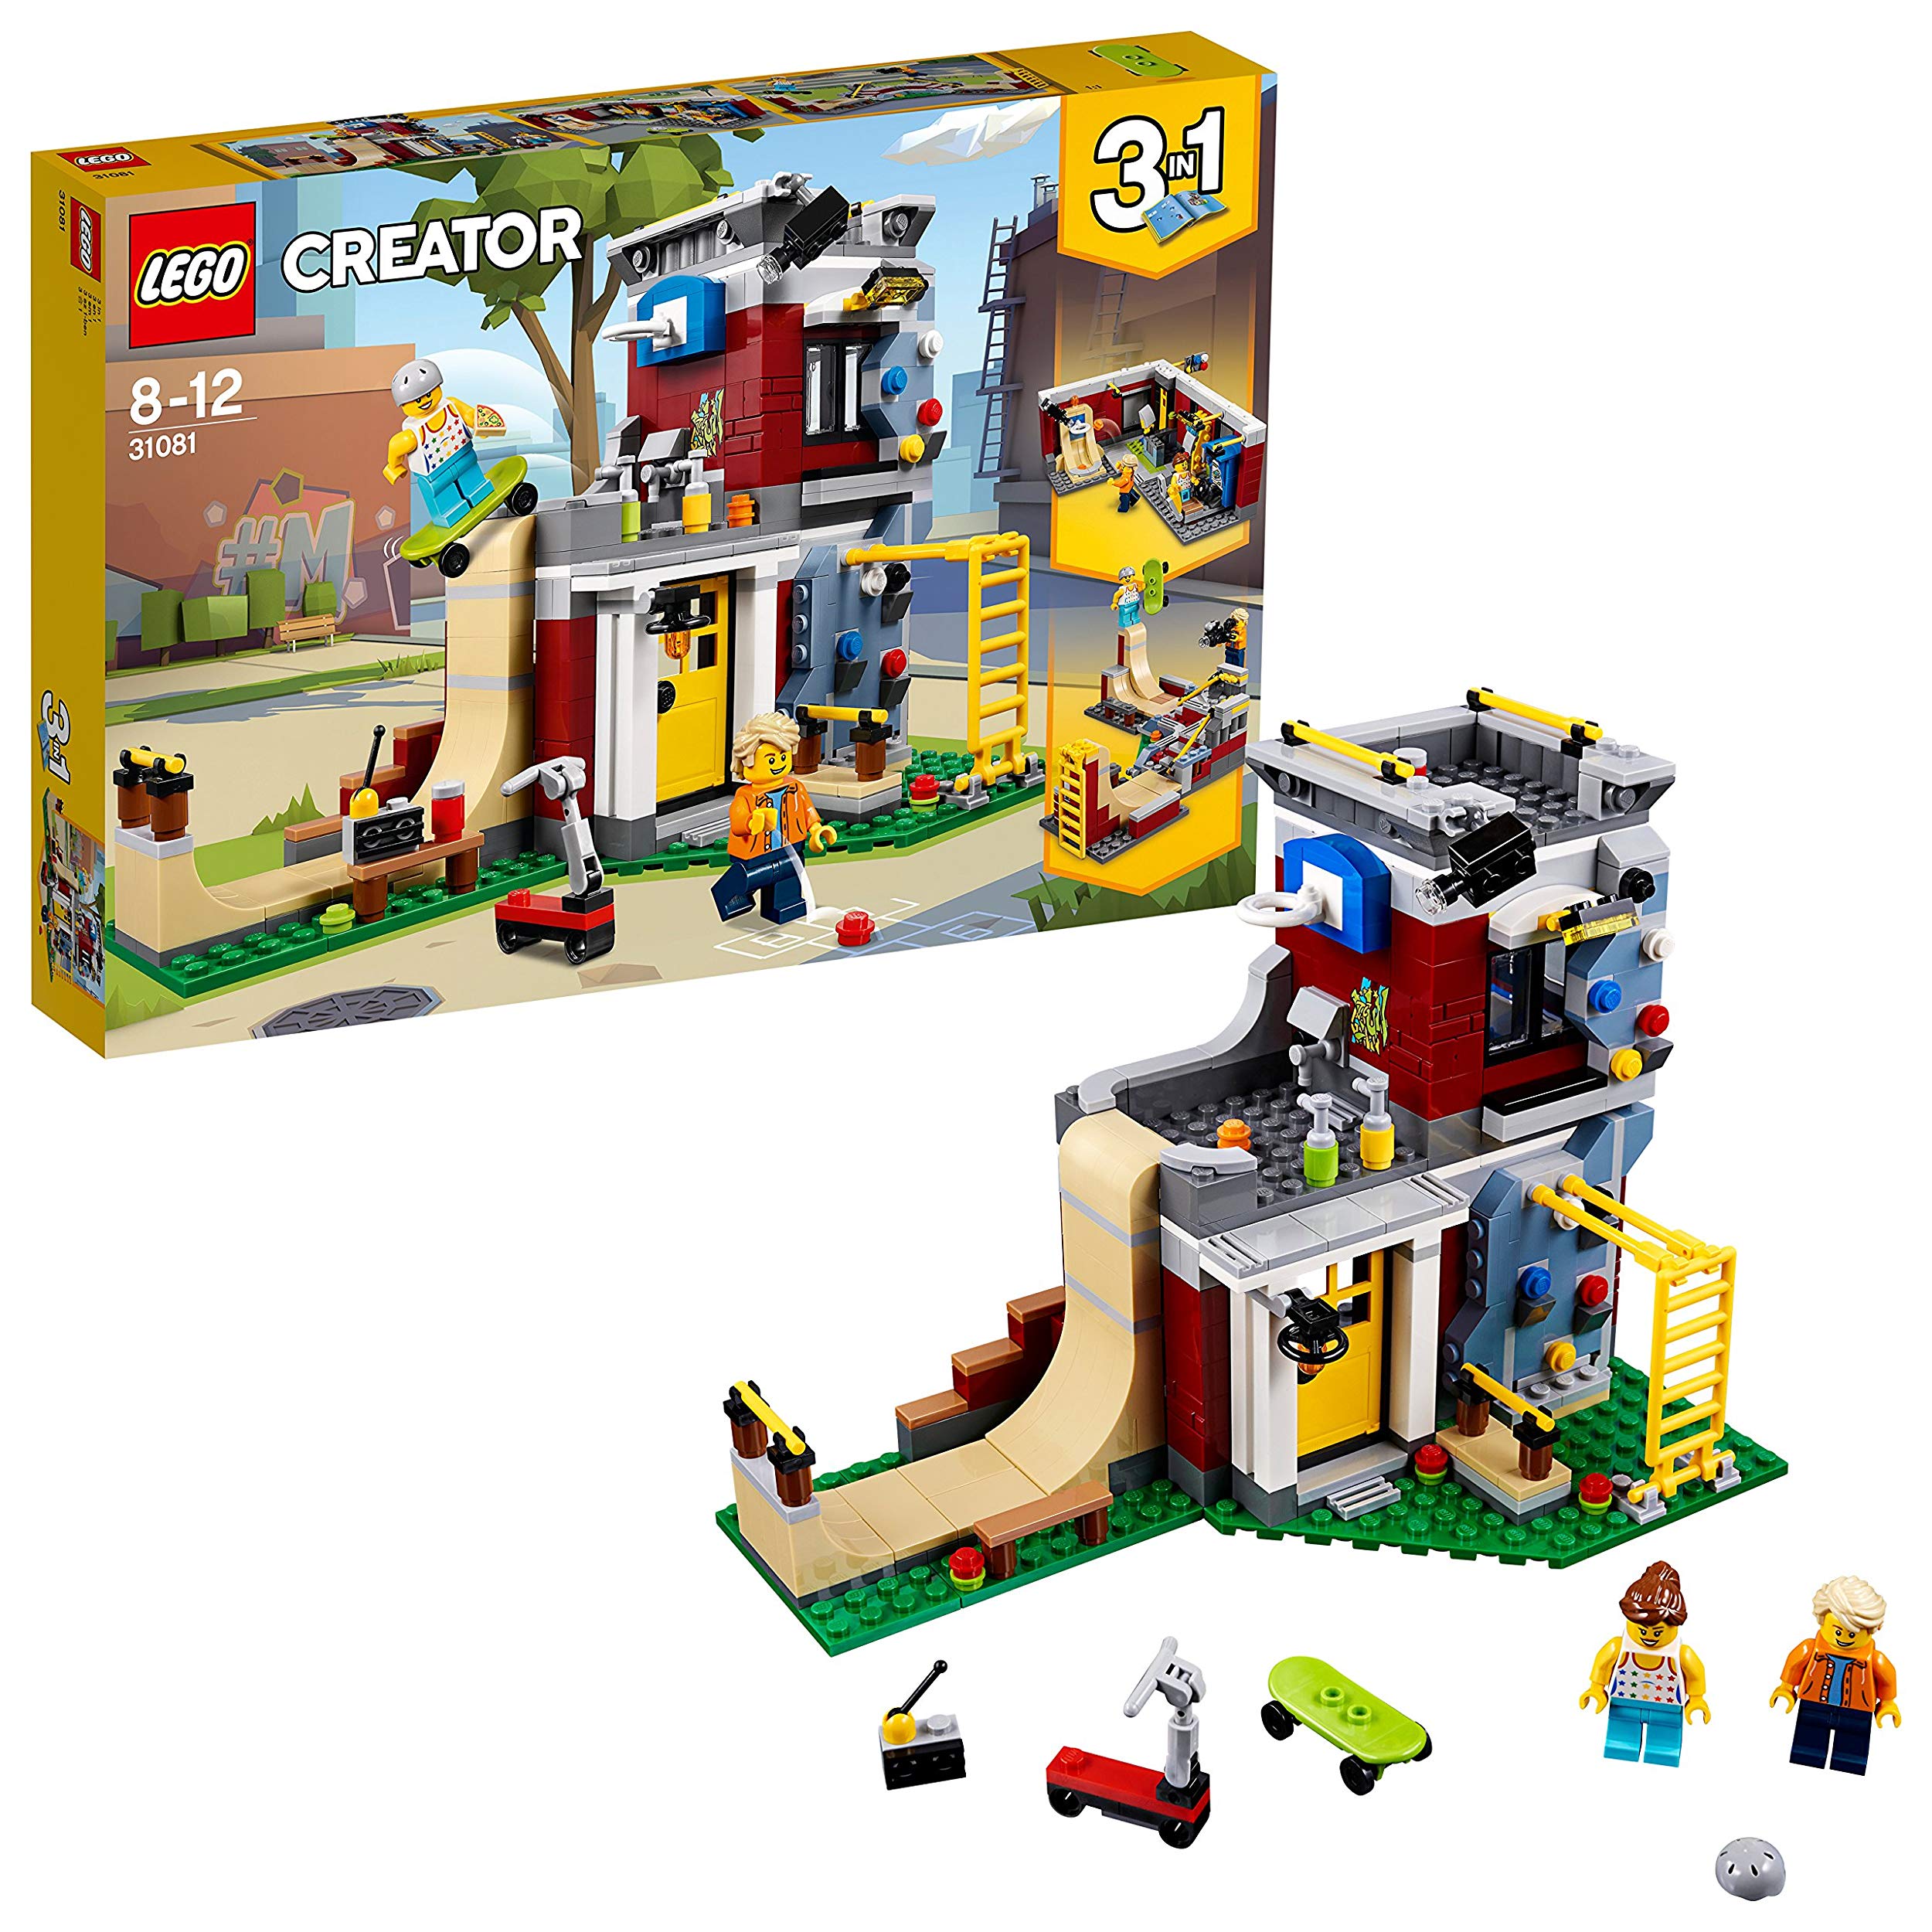 Lego Modular Leisure Centre Construction Toy